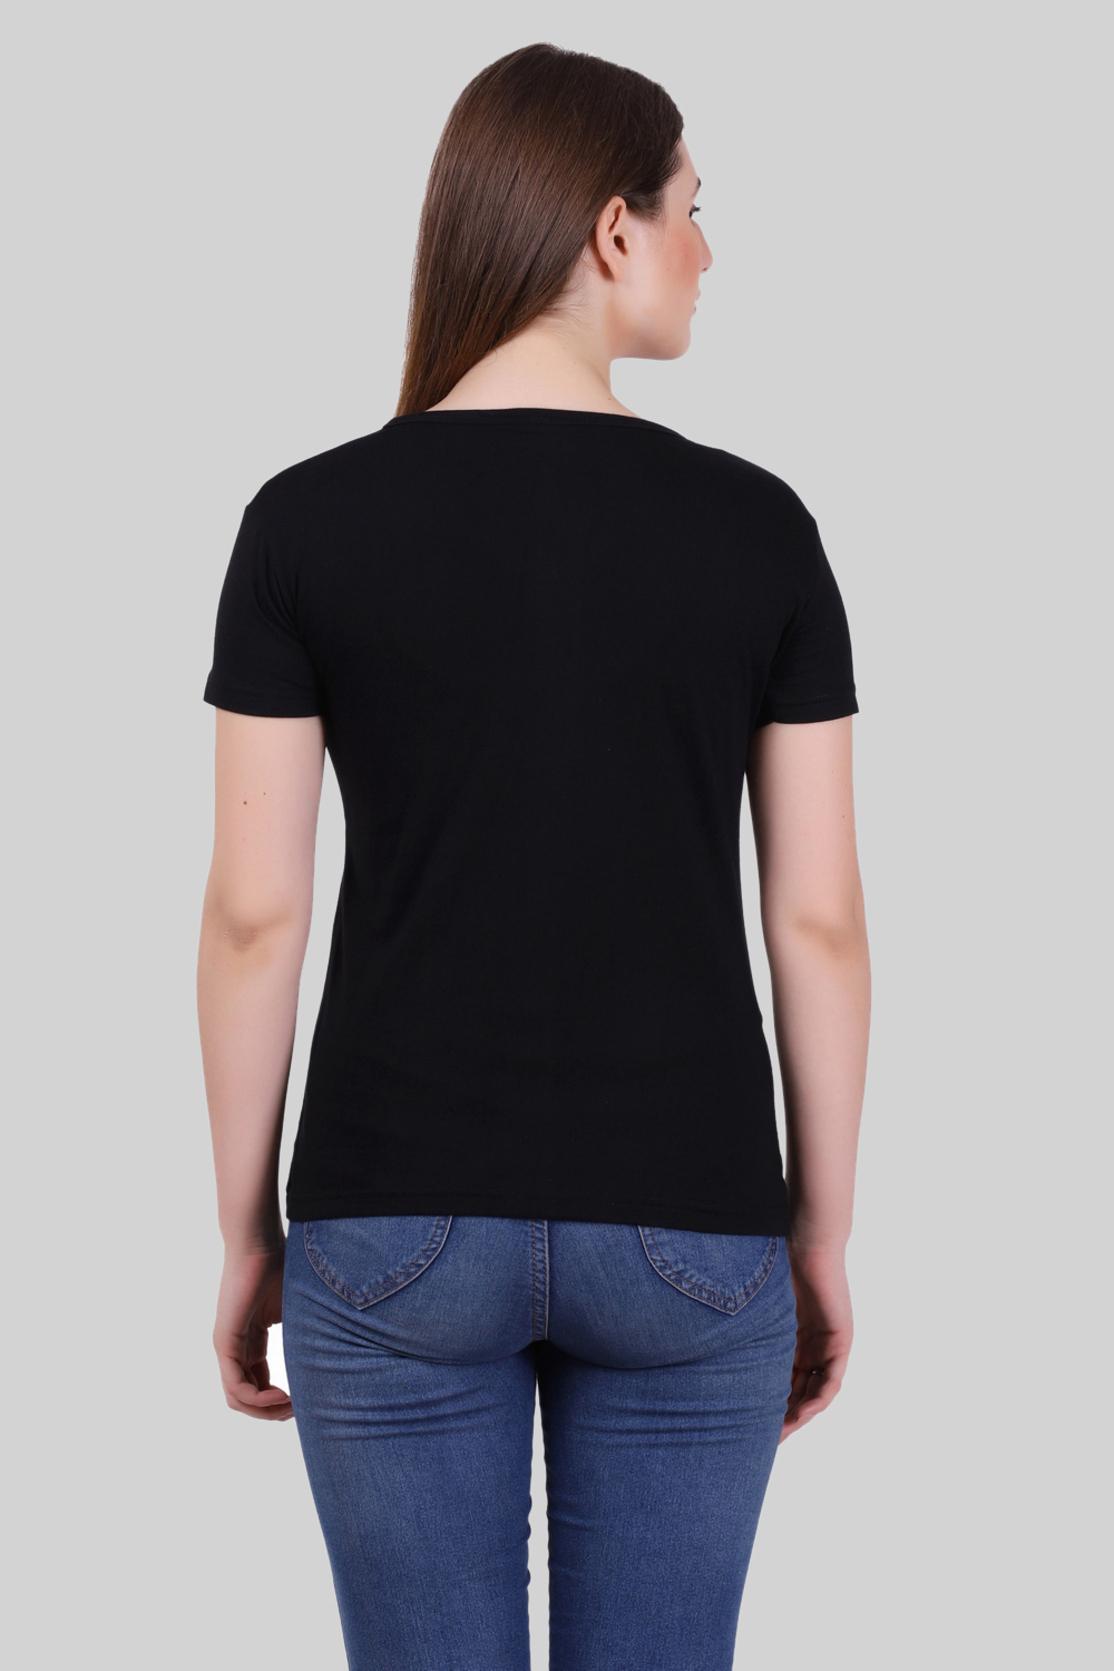 Basic Black V-Neck T-Shirt